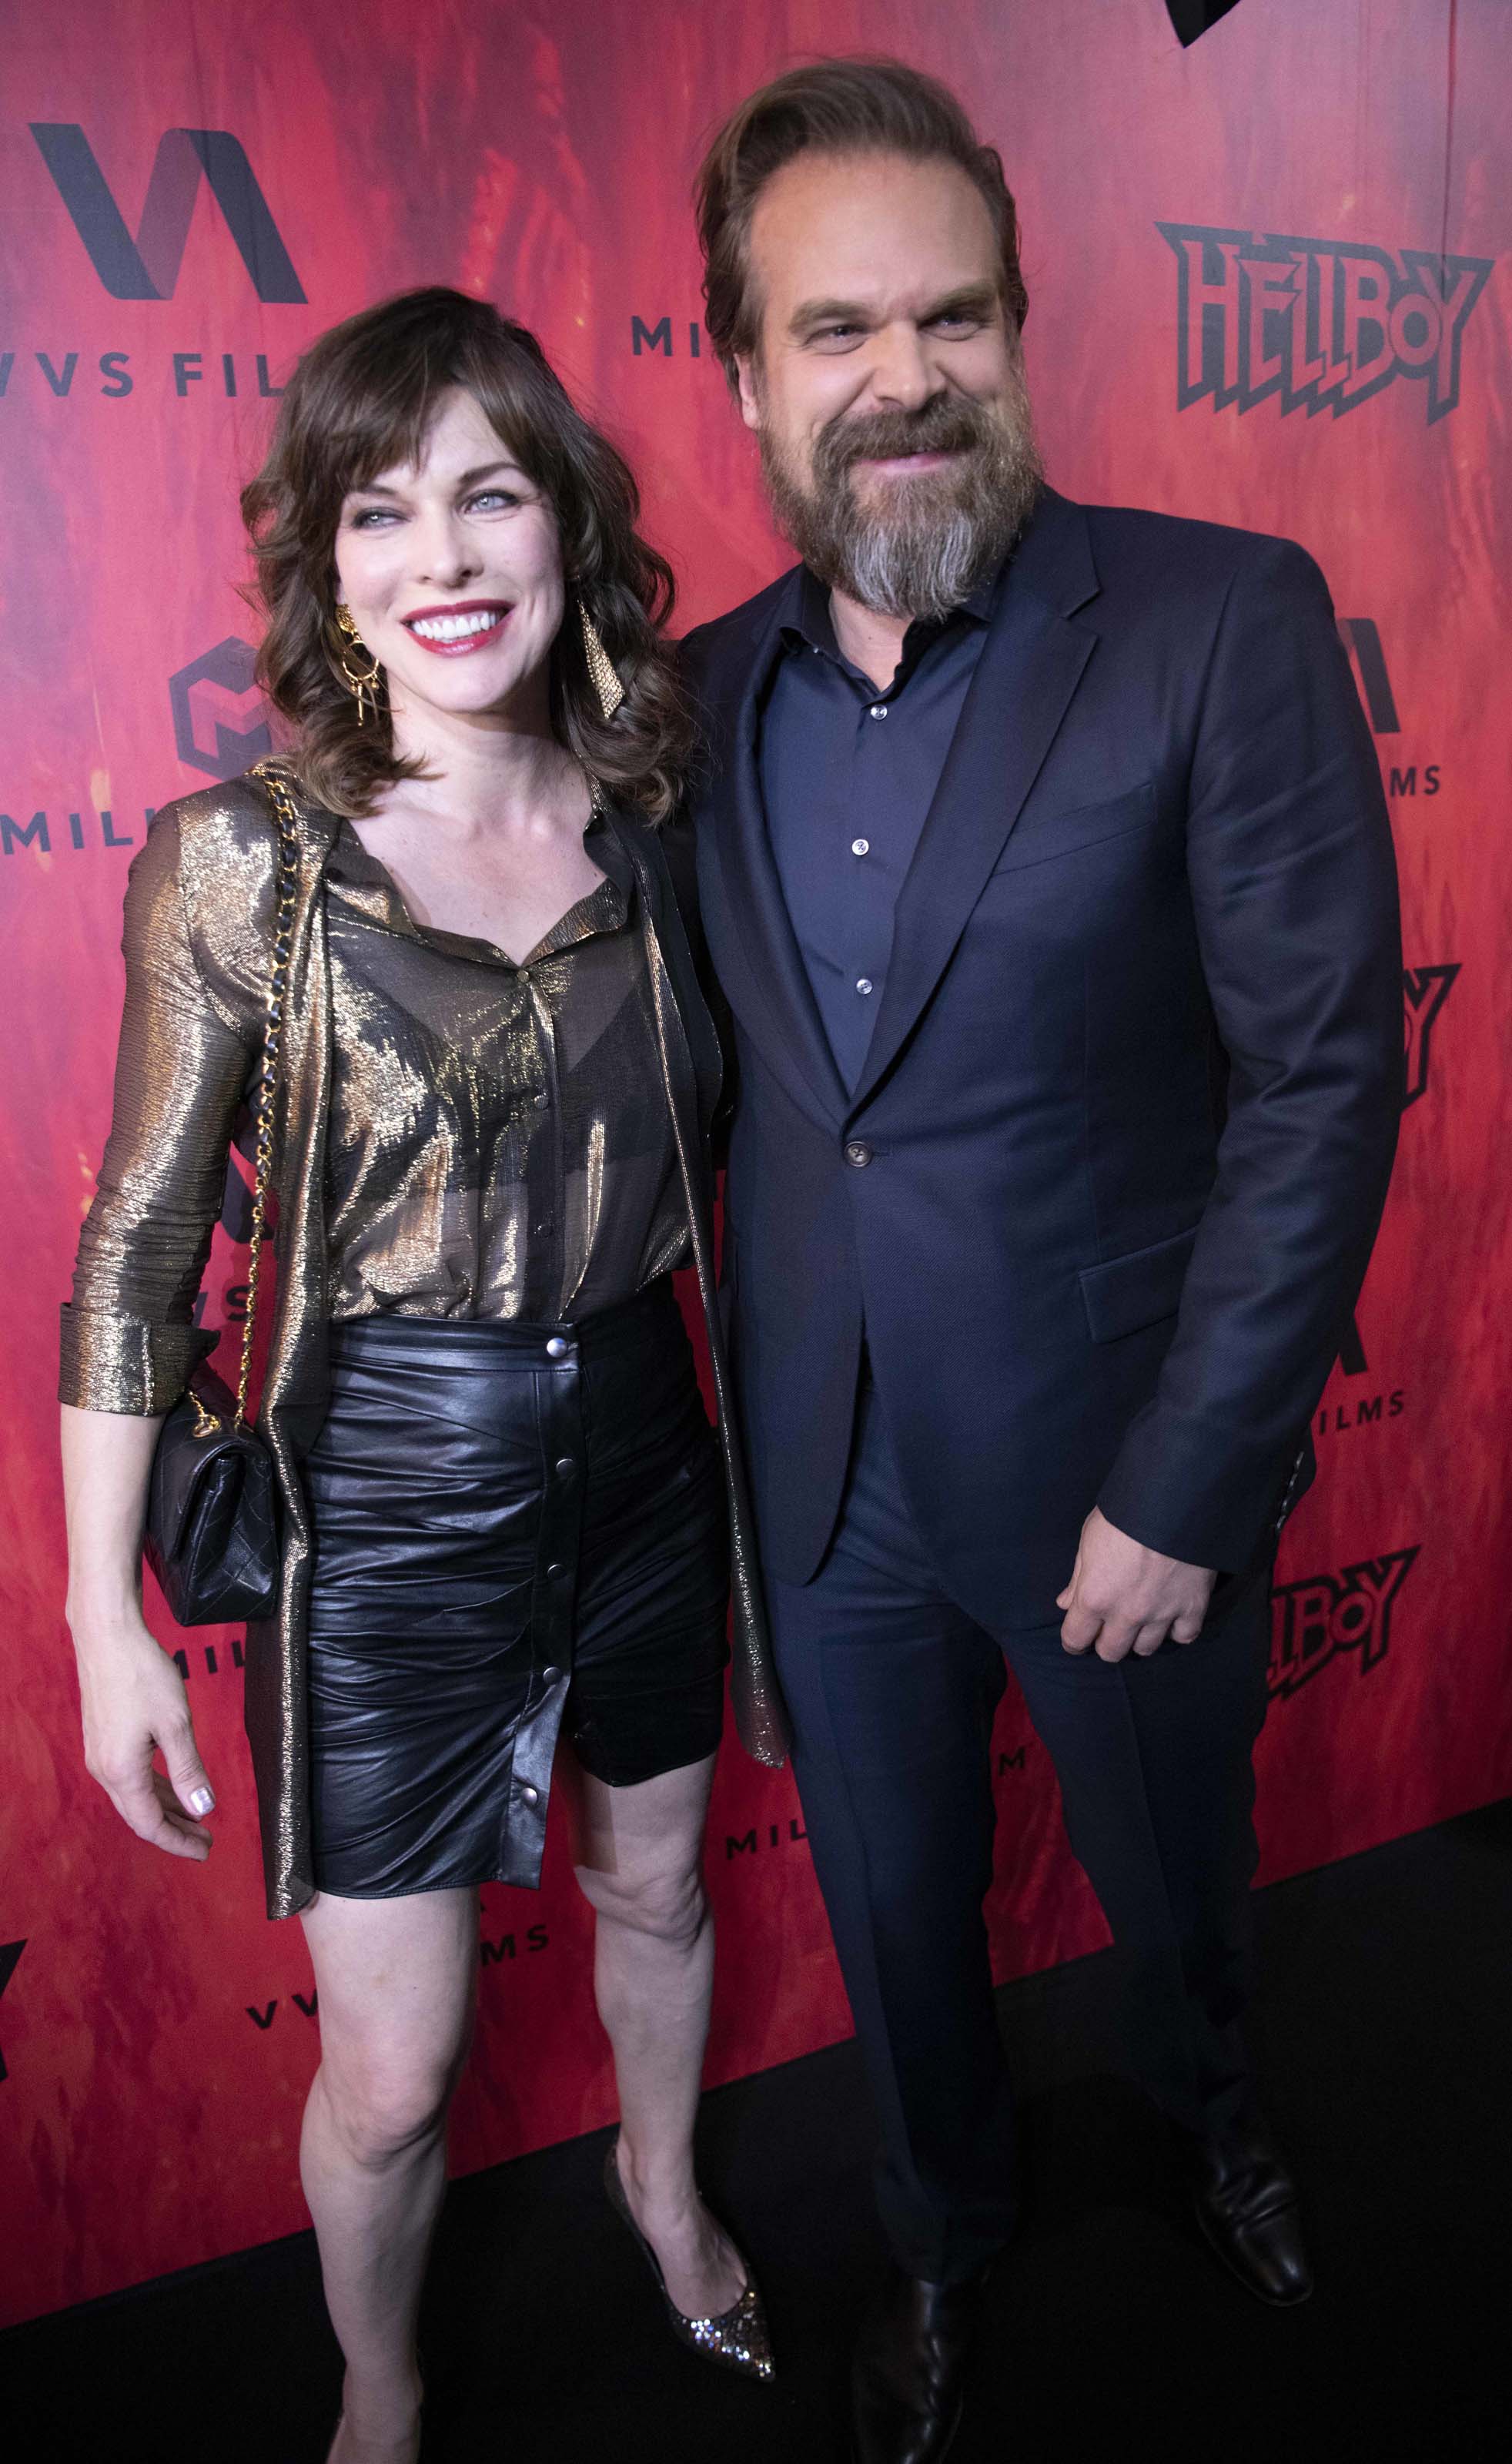 Milla Jovovich attends Hellboy premiere